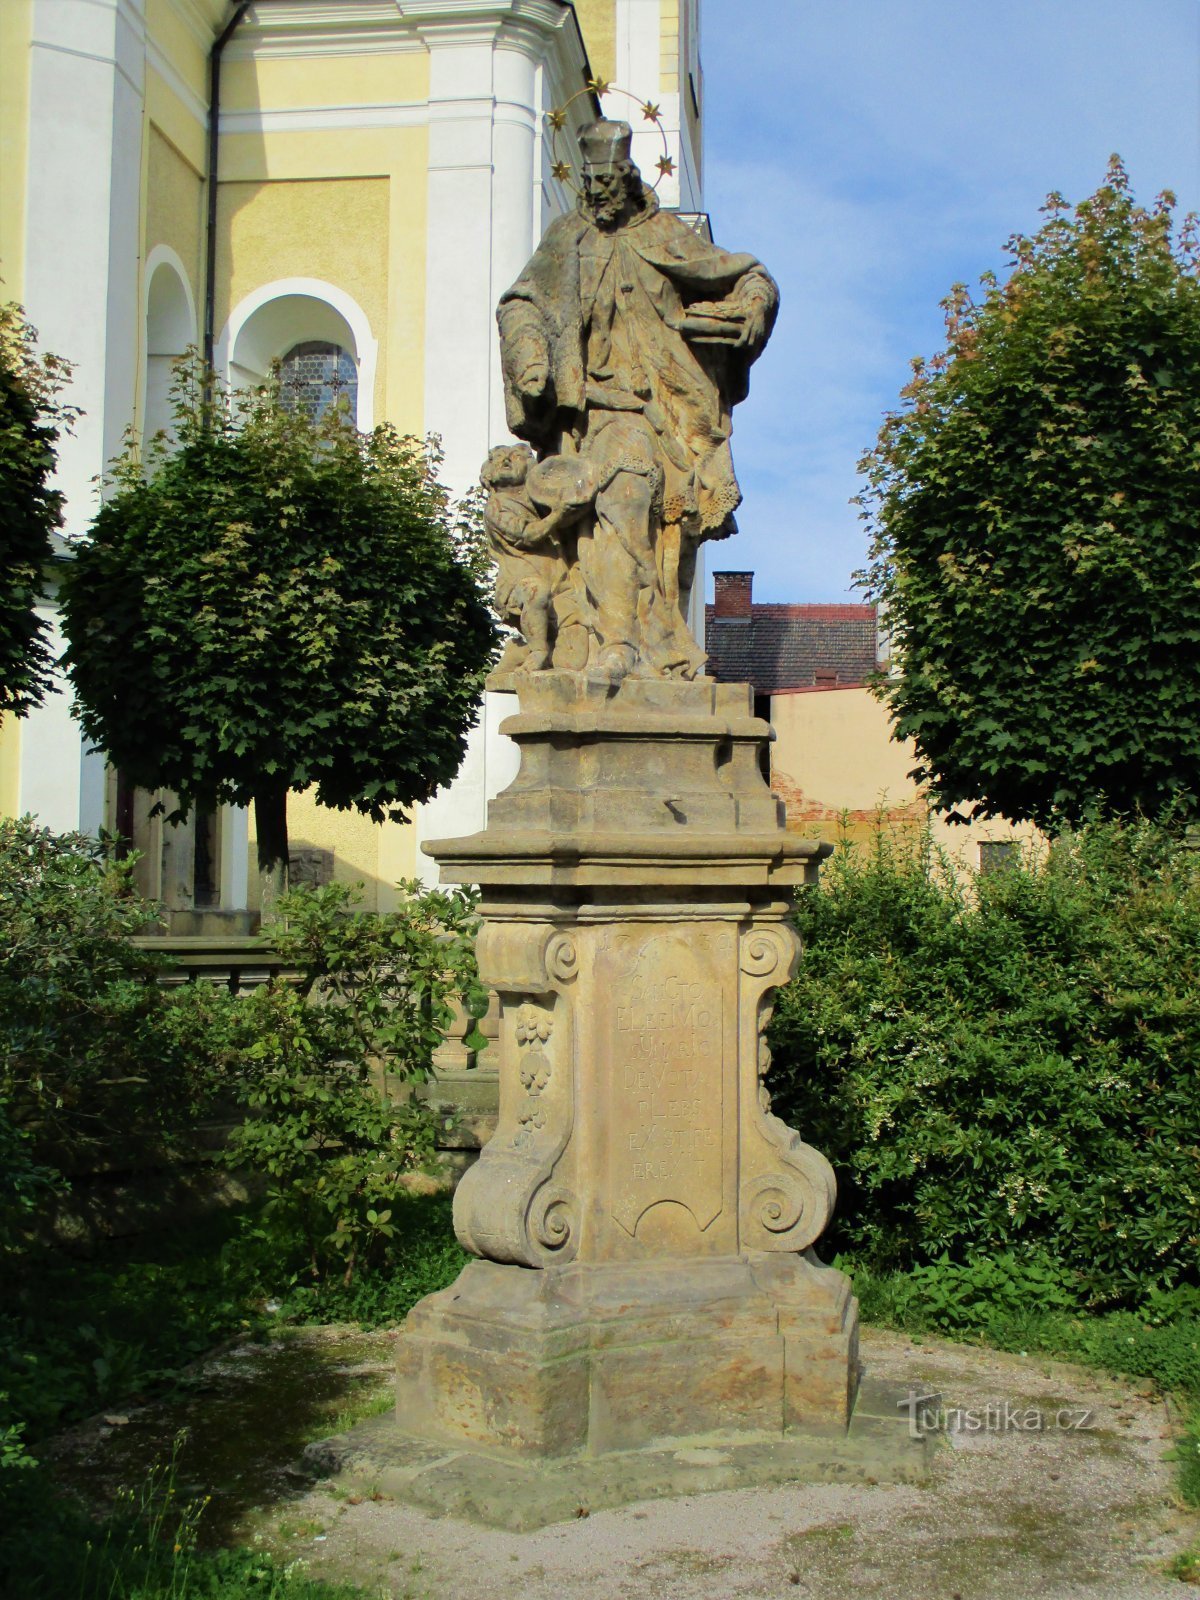 Статуя св. Иоанн Непомуцкий в костеле (Горжице, 26.7.2020 июля XNUMX г.)